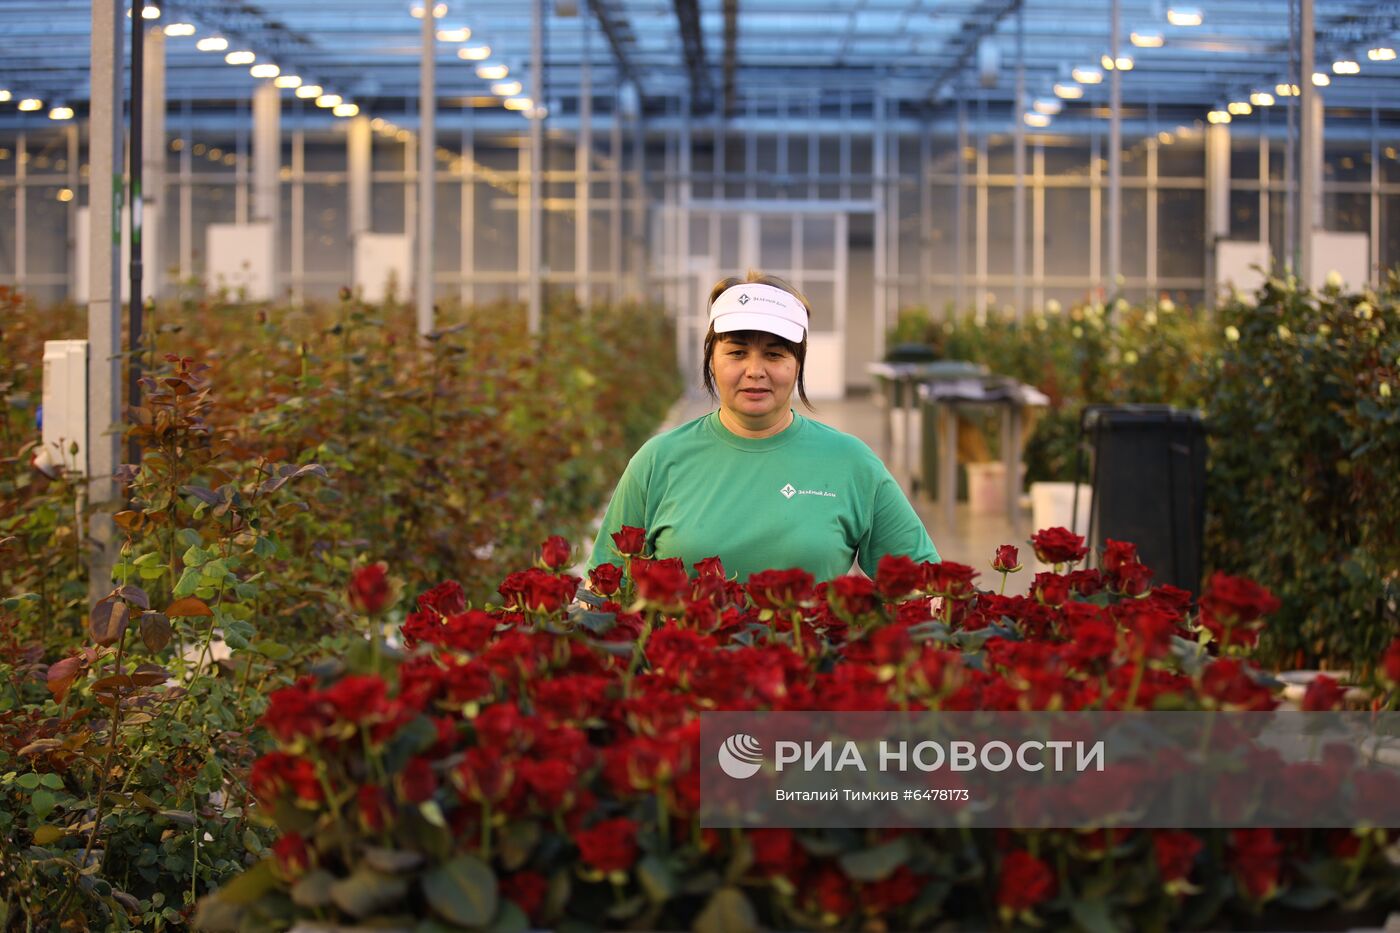 Выращивание роз в тепличном хозяйстве в Адыгее